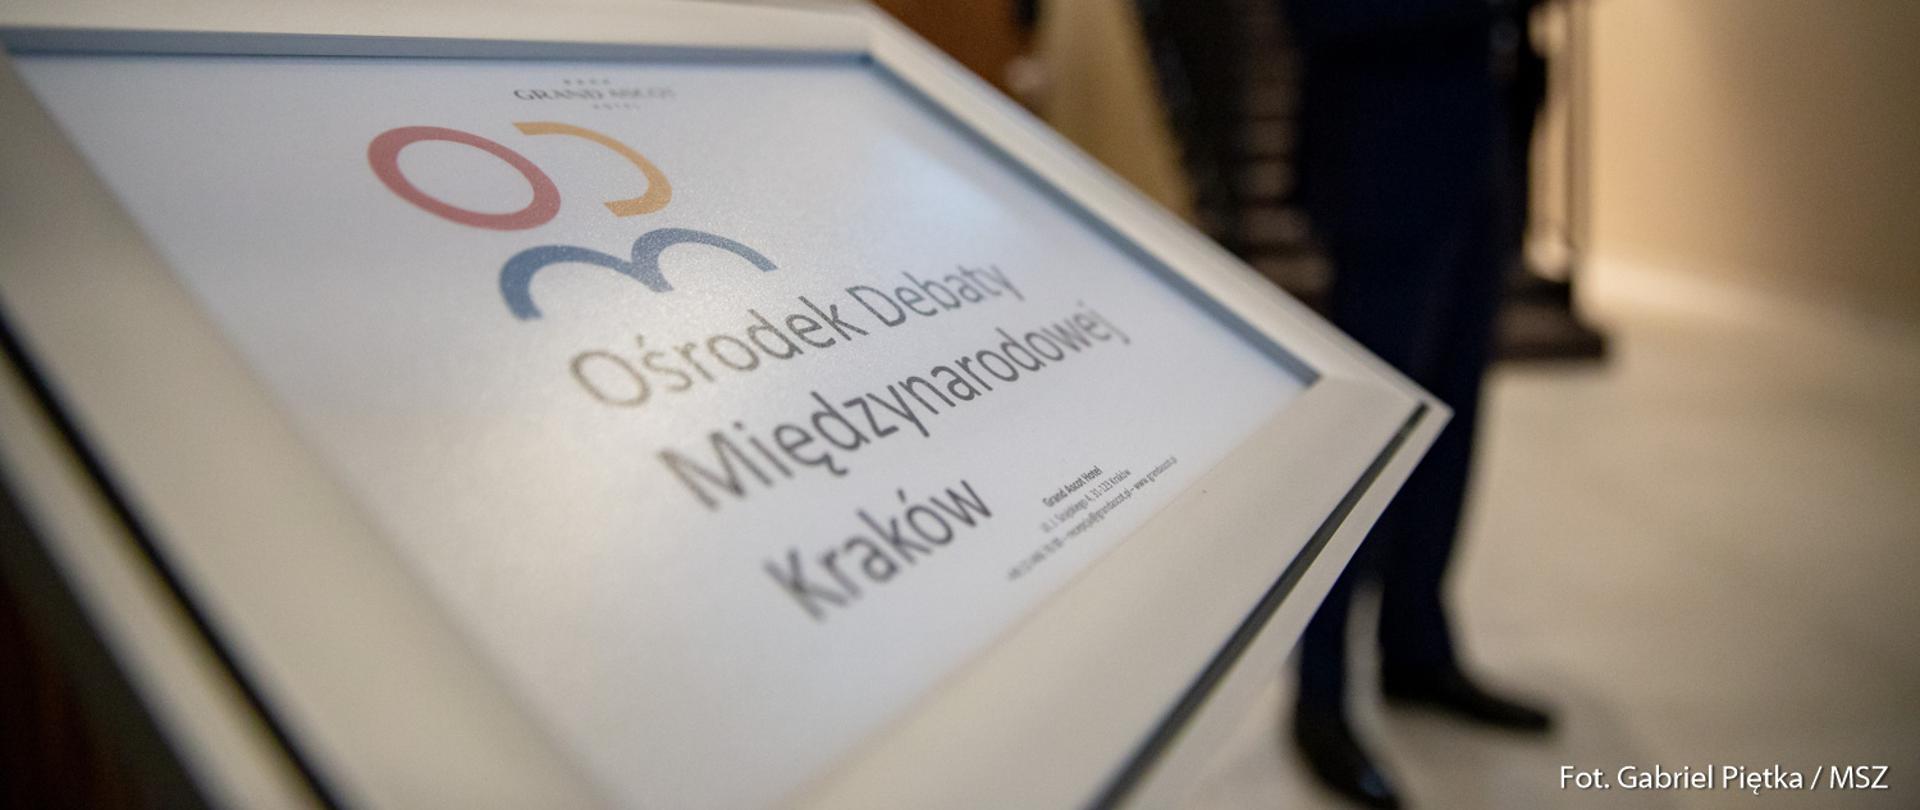 Ekran z logotypem Ośrodka Debaty Międzynarodowej w Krakowie, w tle niewyraźny człowiek w garniturze.